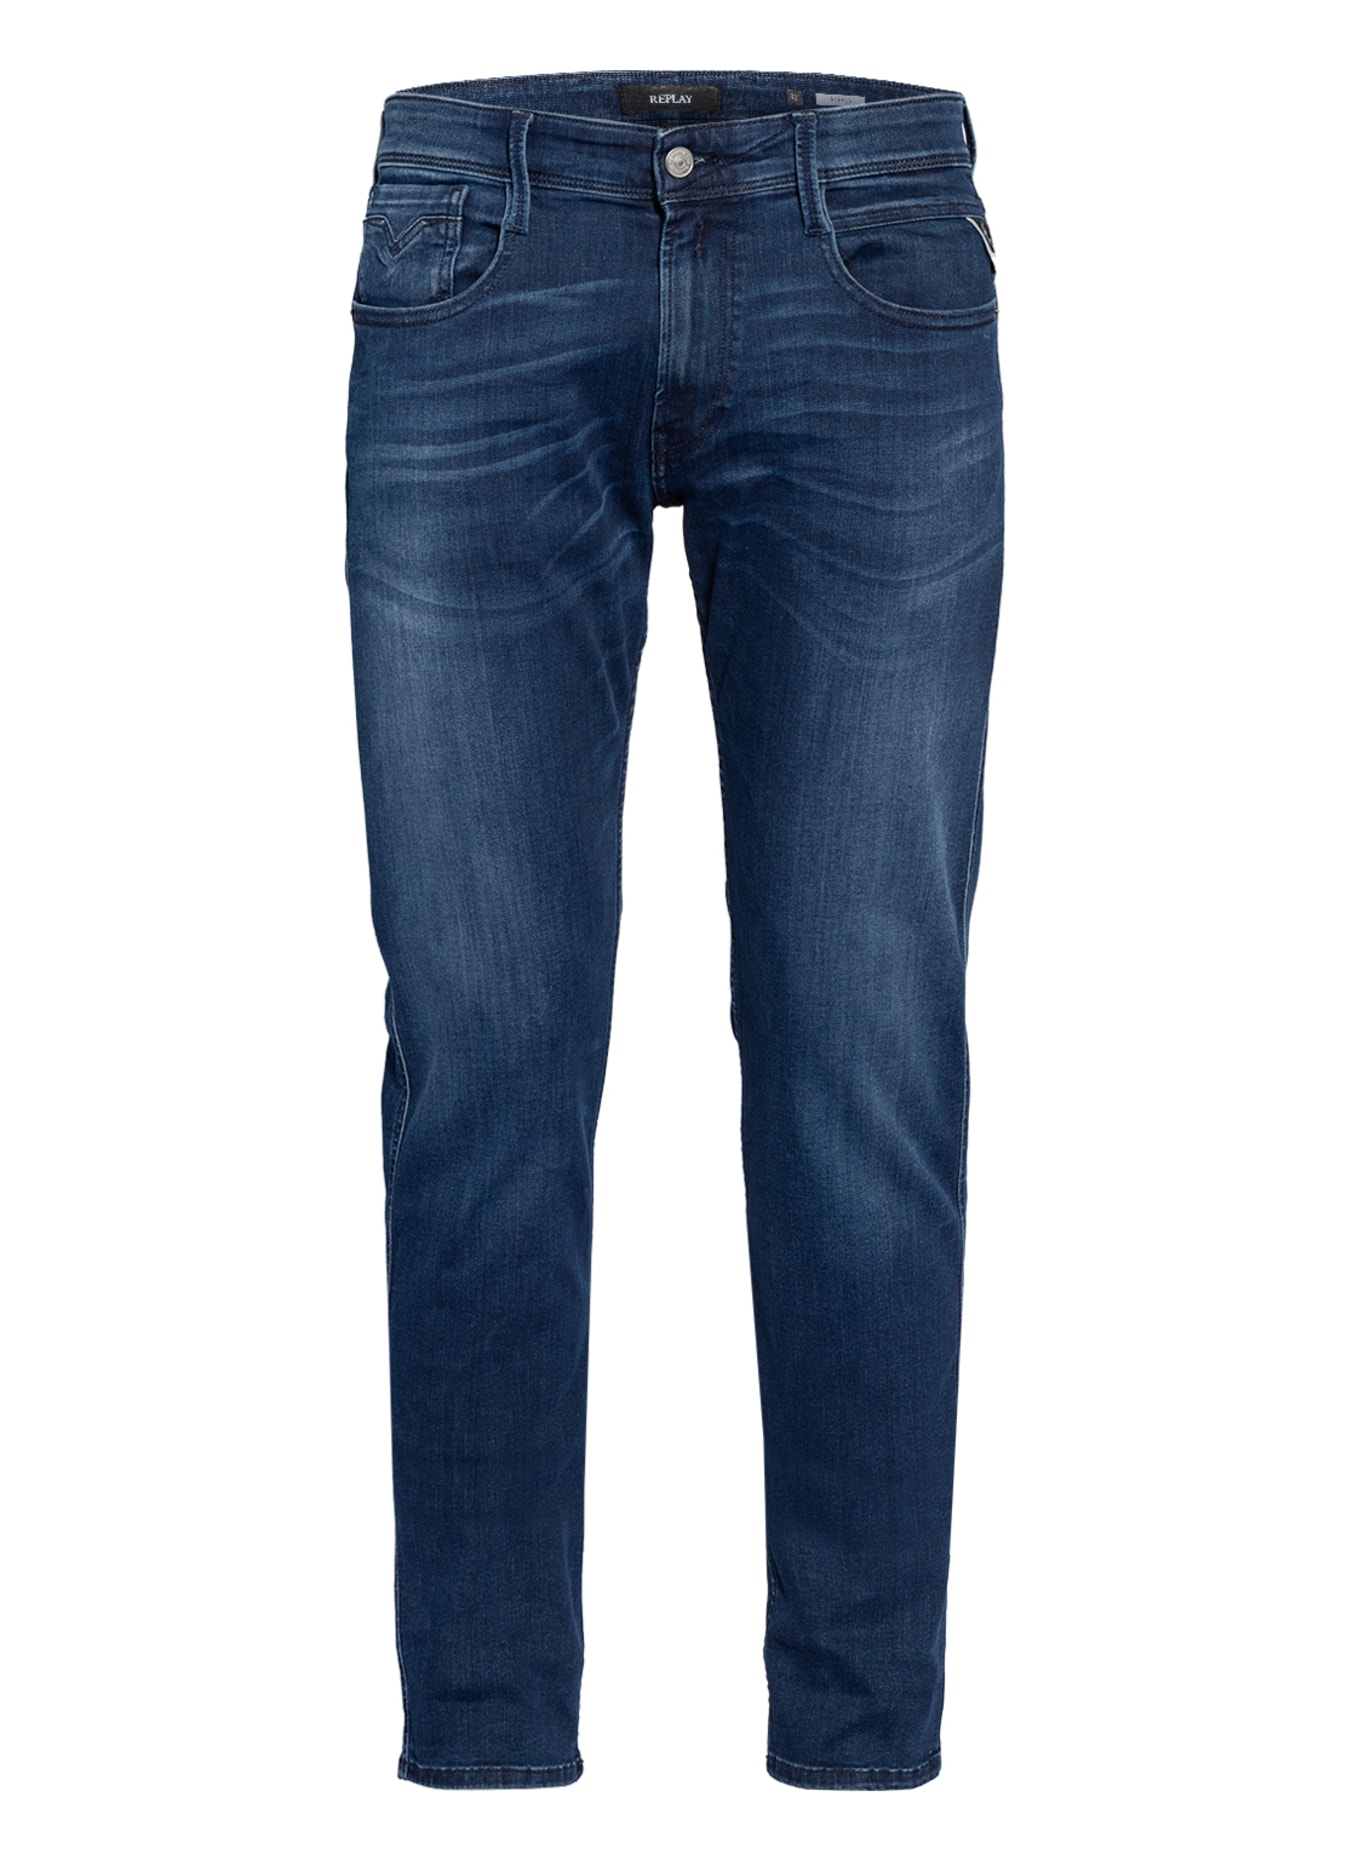 REPLAY Jeans Slim Fit, Farbe: 009 MEDIUM BLUE (Bild 1)